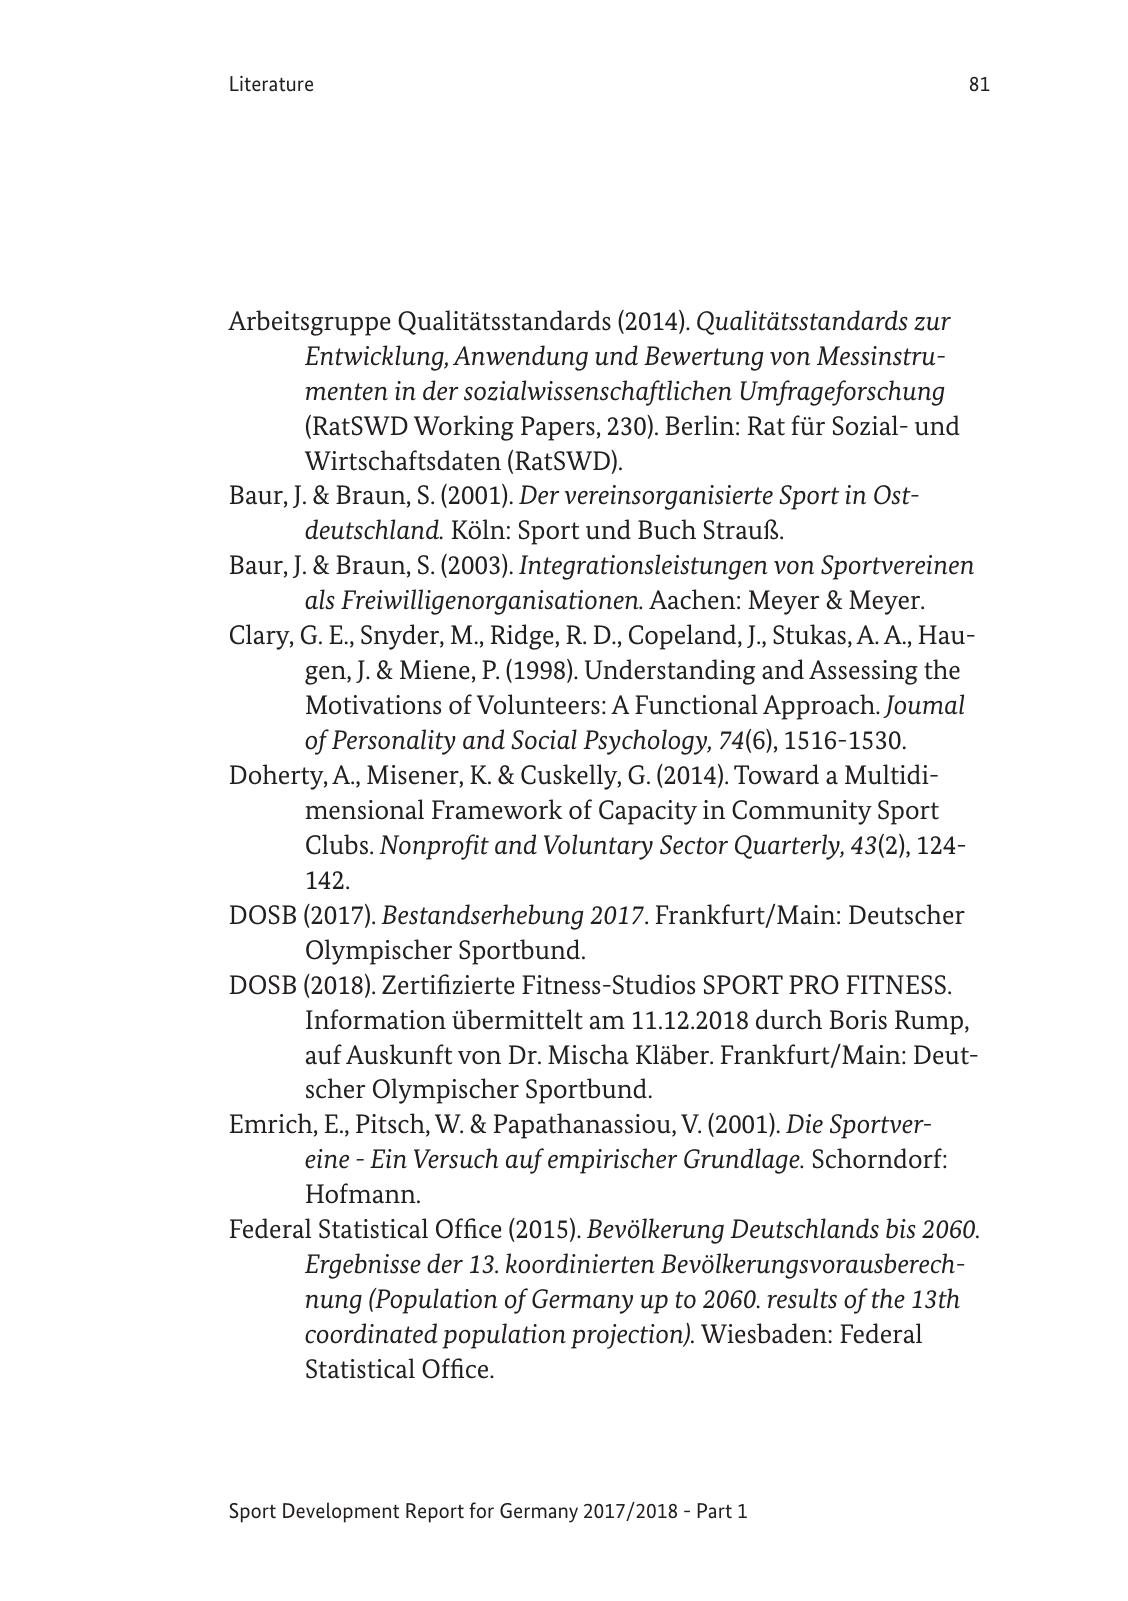 Vorschau SEB-Bericht - Bundesbericht (englisch) Seite 81